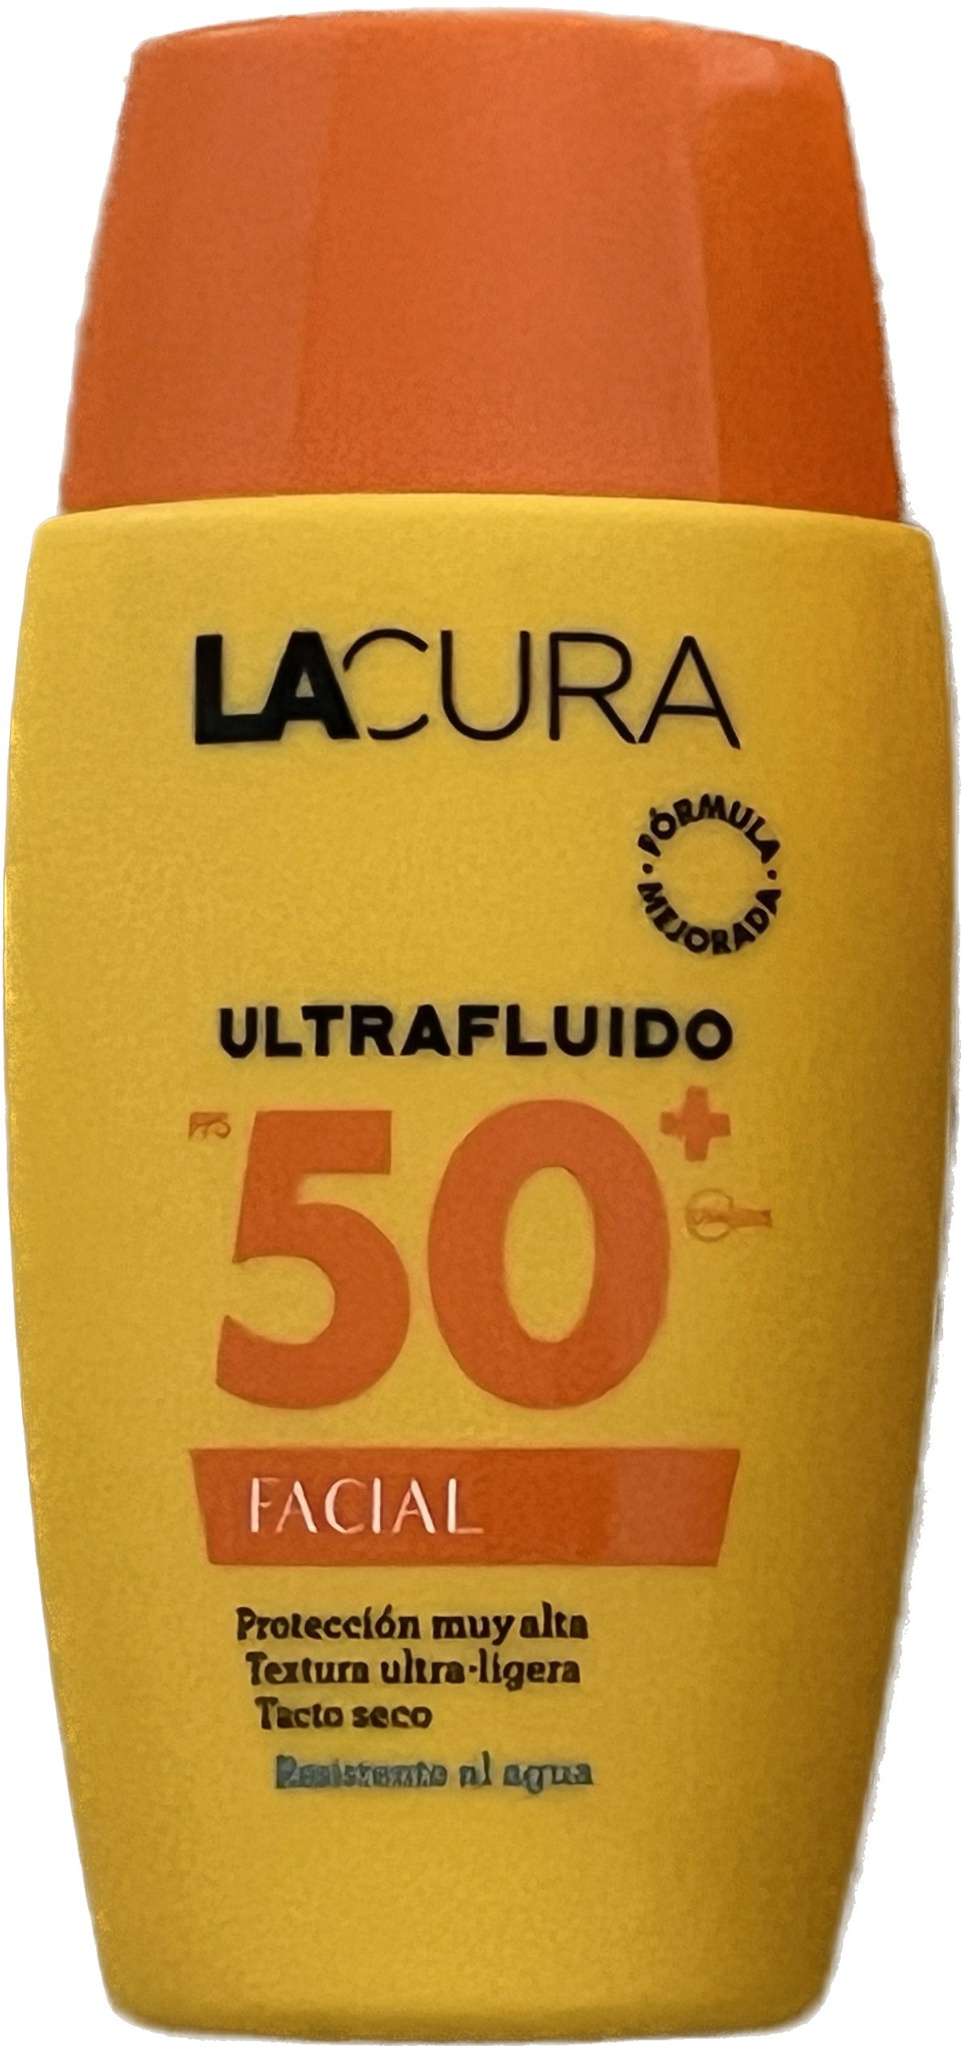 LACURA Ultrafluido Solar Facial SPF 50+